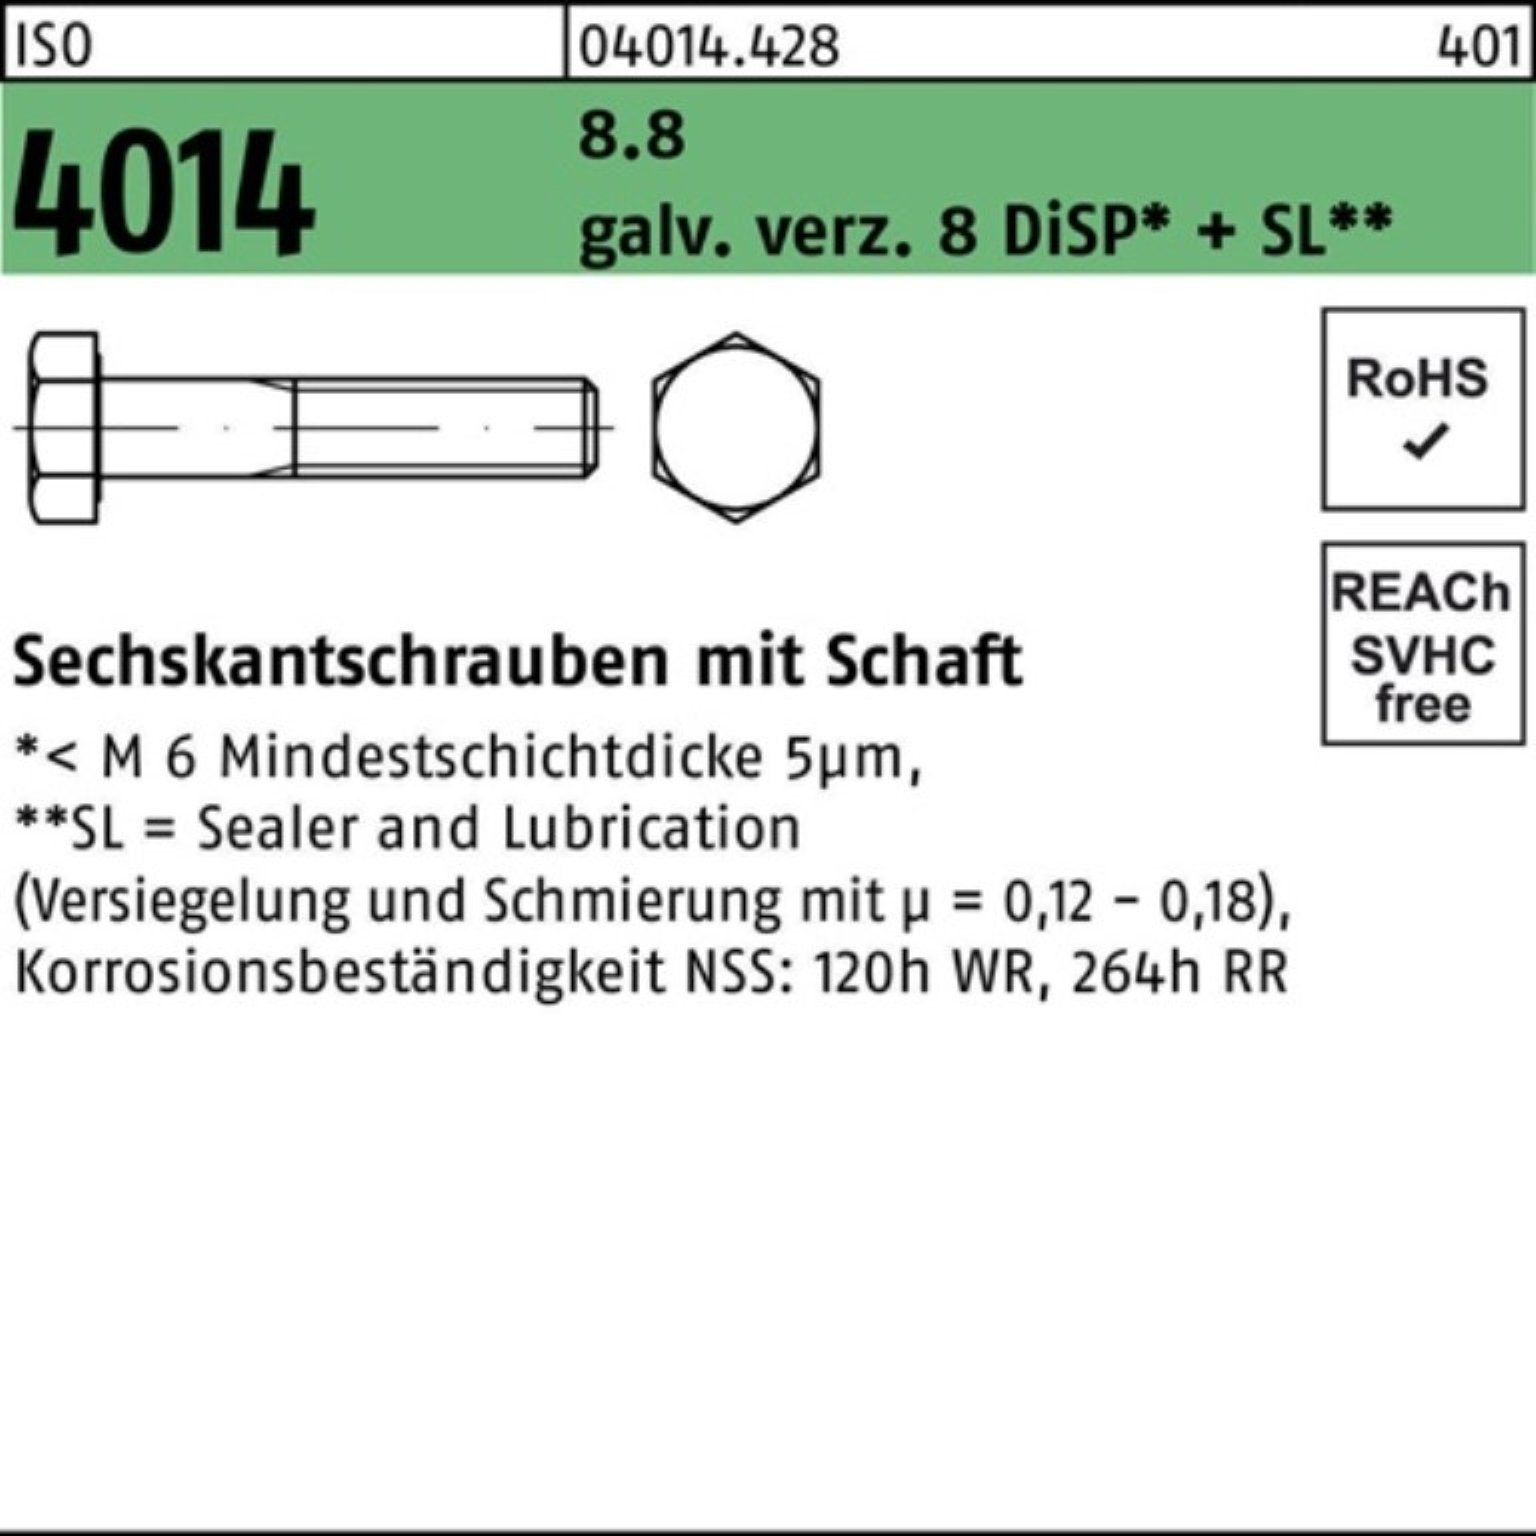 8 Schaft Bufab ISO Pack 4014 Sechskantschraube 8.8 100er galv.verz. M24x120 Sechskantschraube